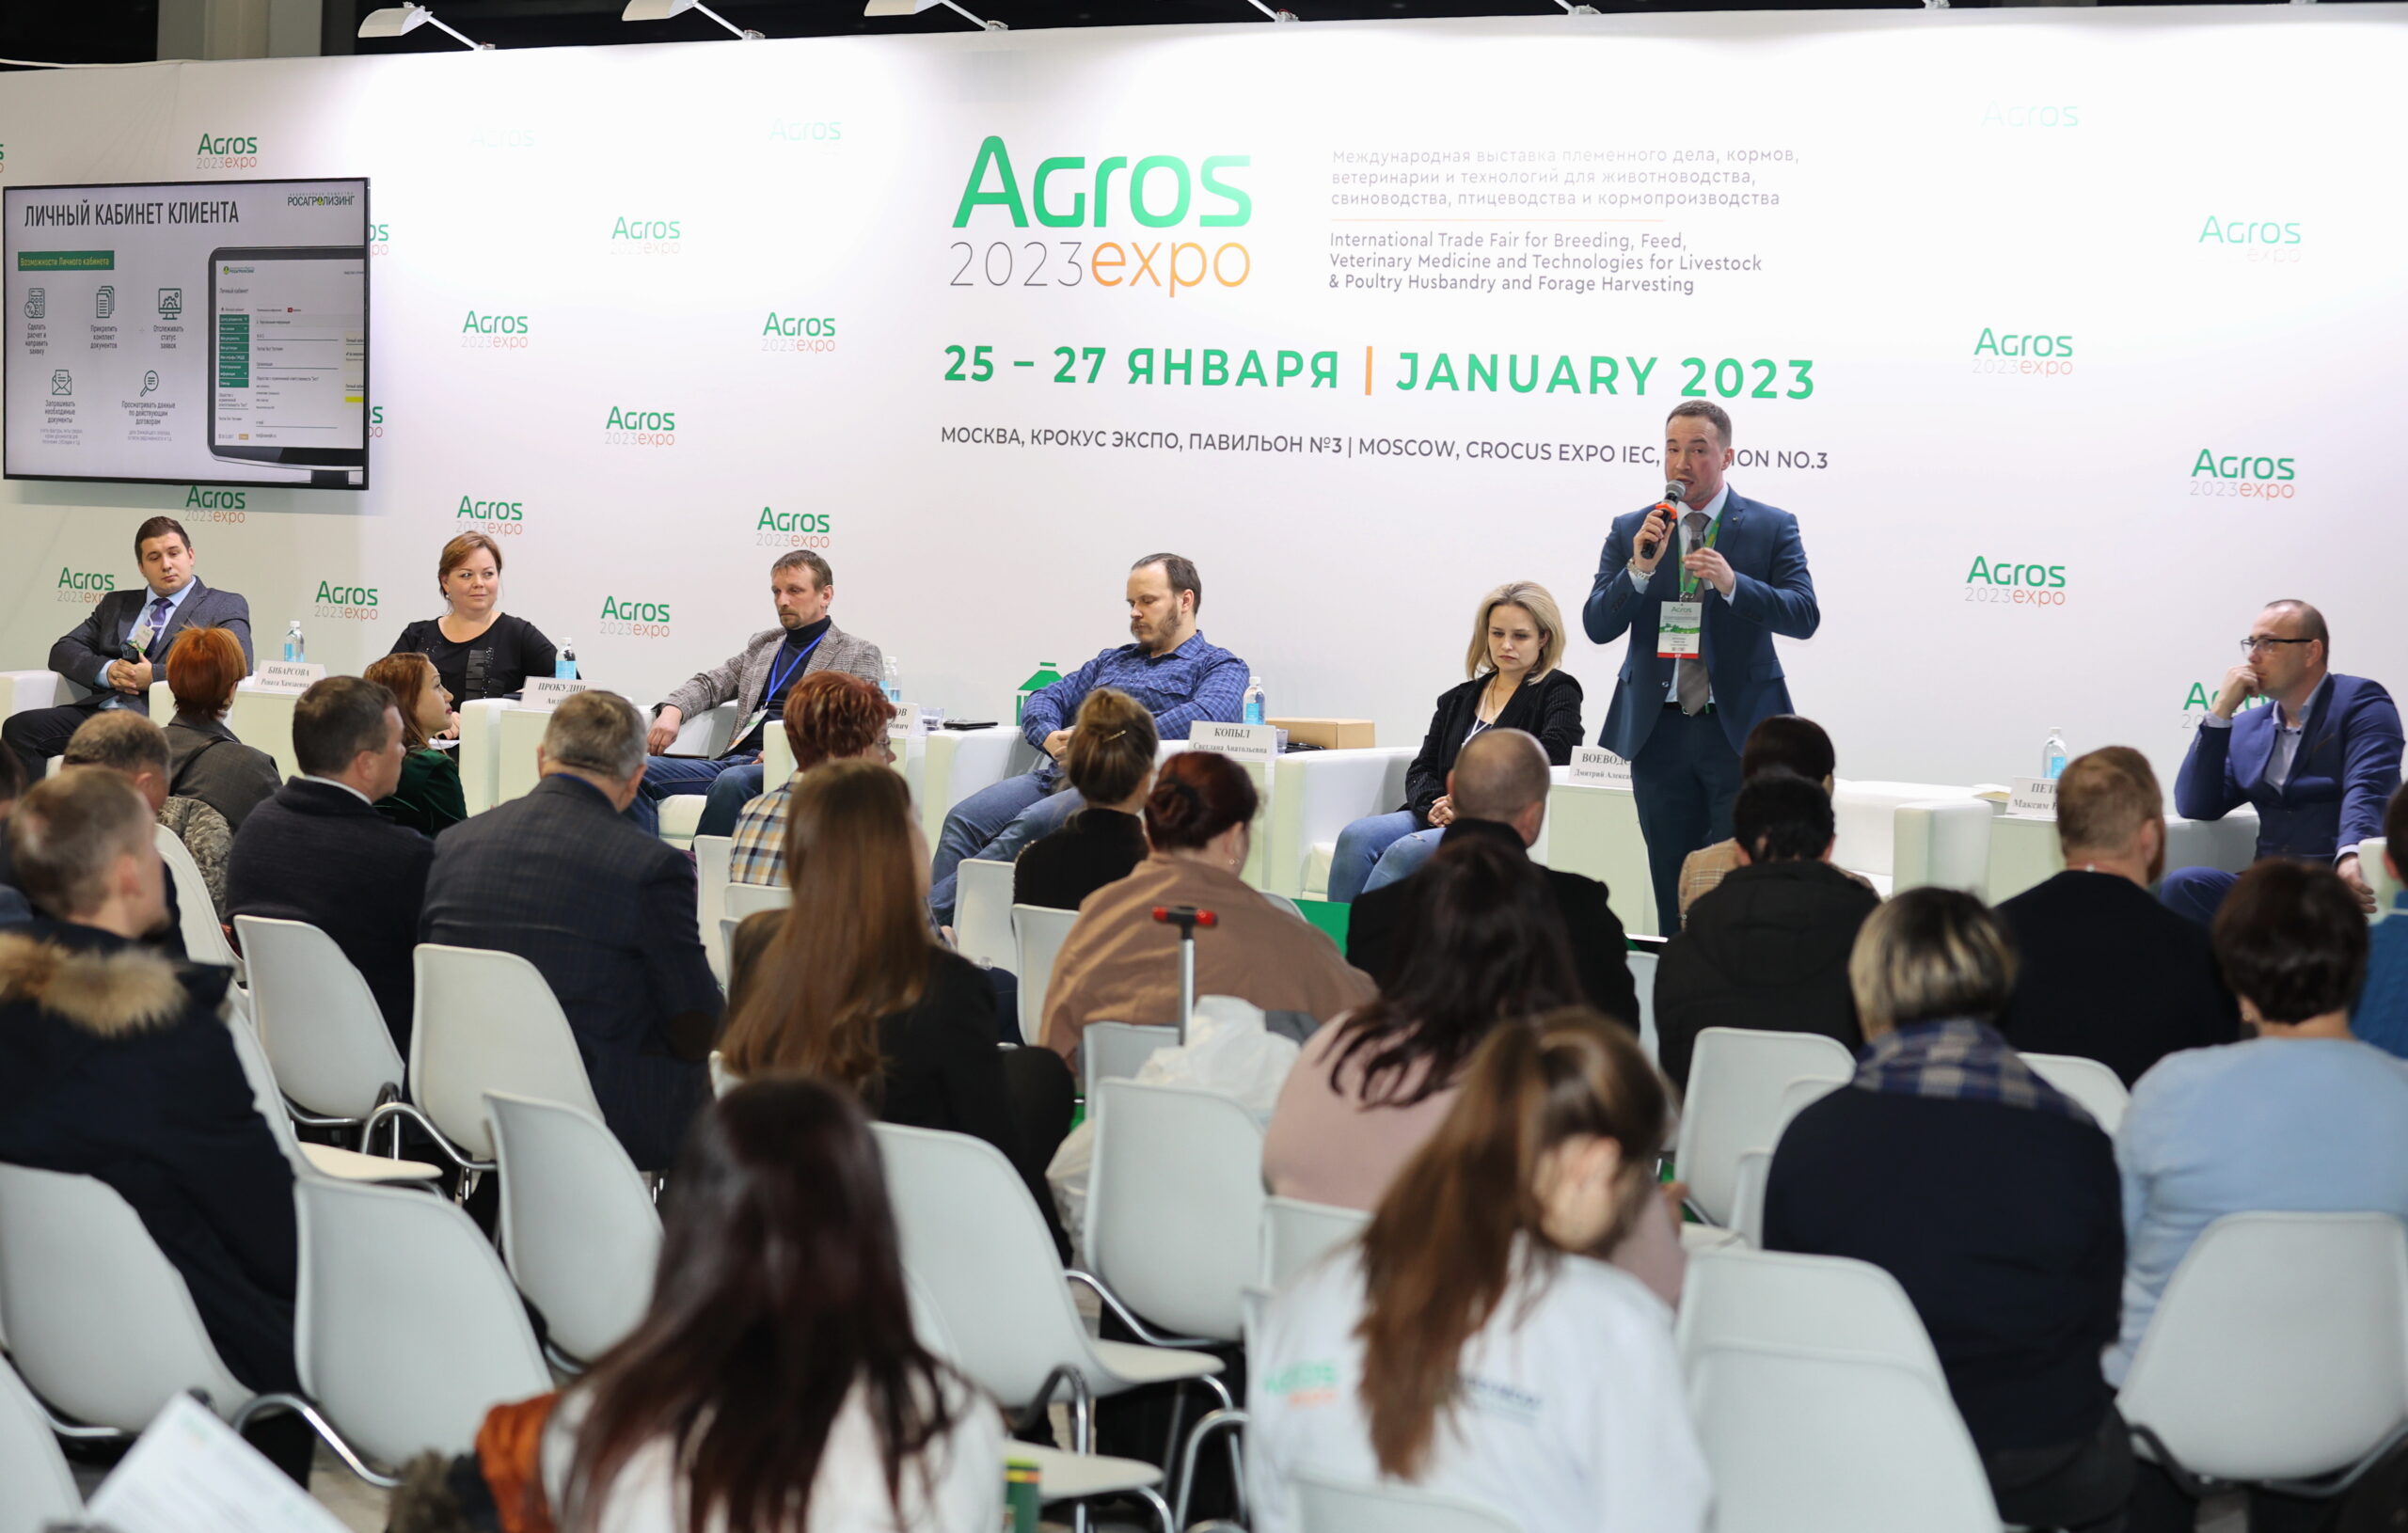  26 января на АГРОС-2024 состоится Федеральный Фермерский Форум с участием представителей малого и среднего бизнеса